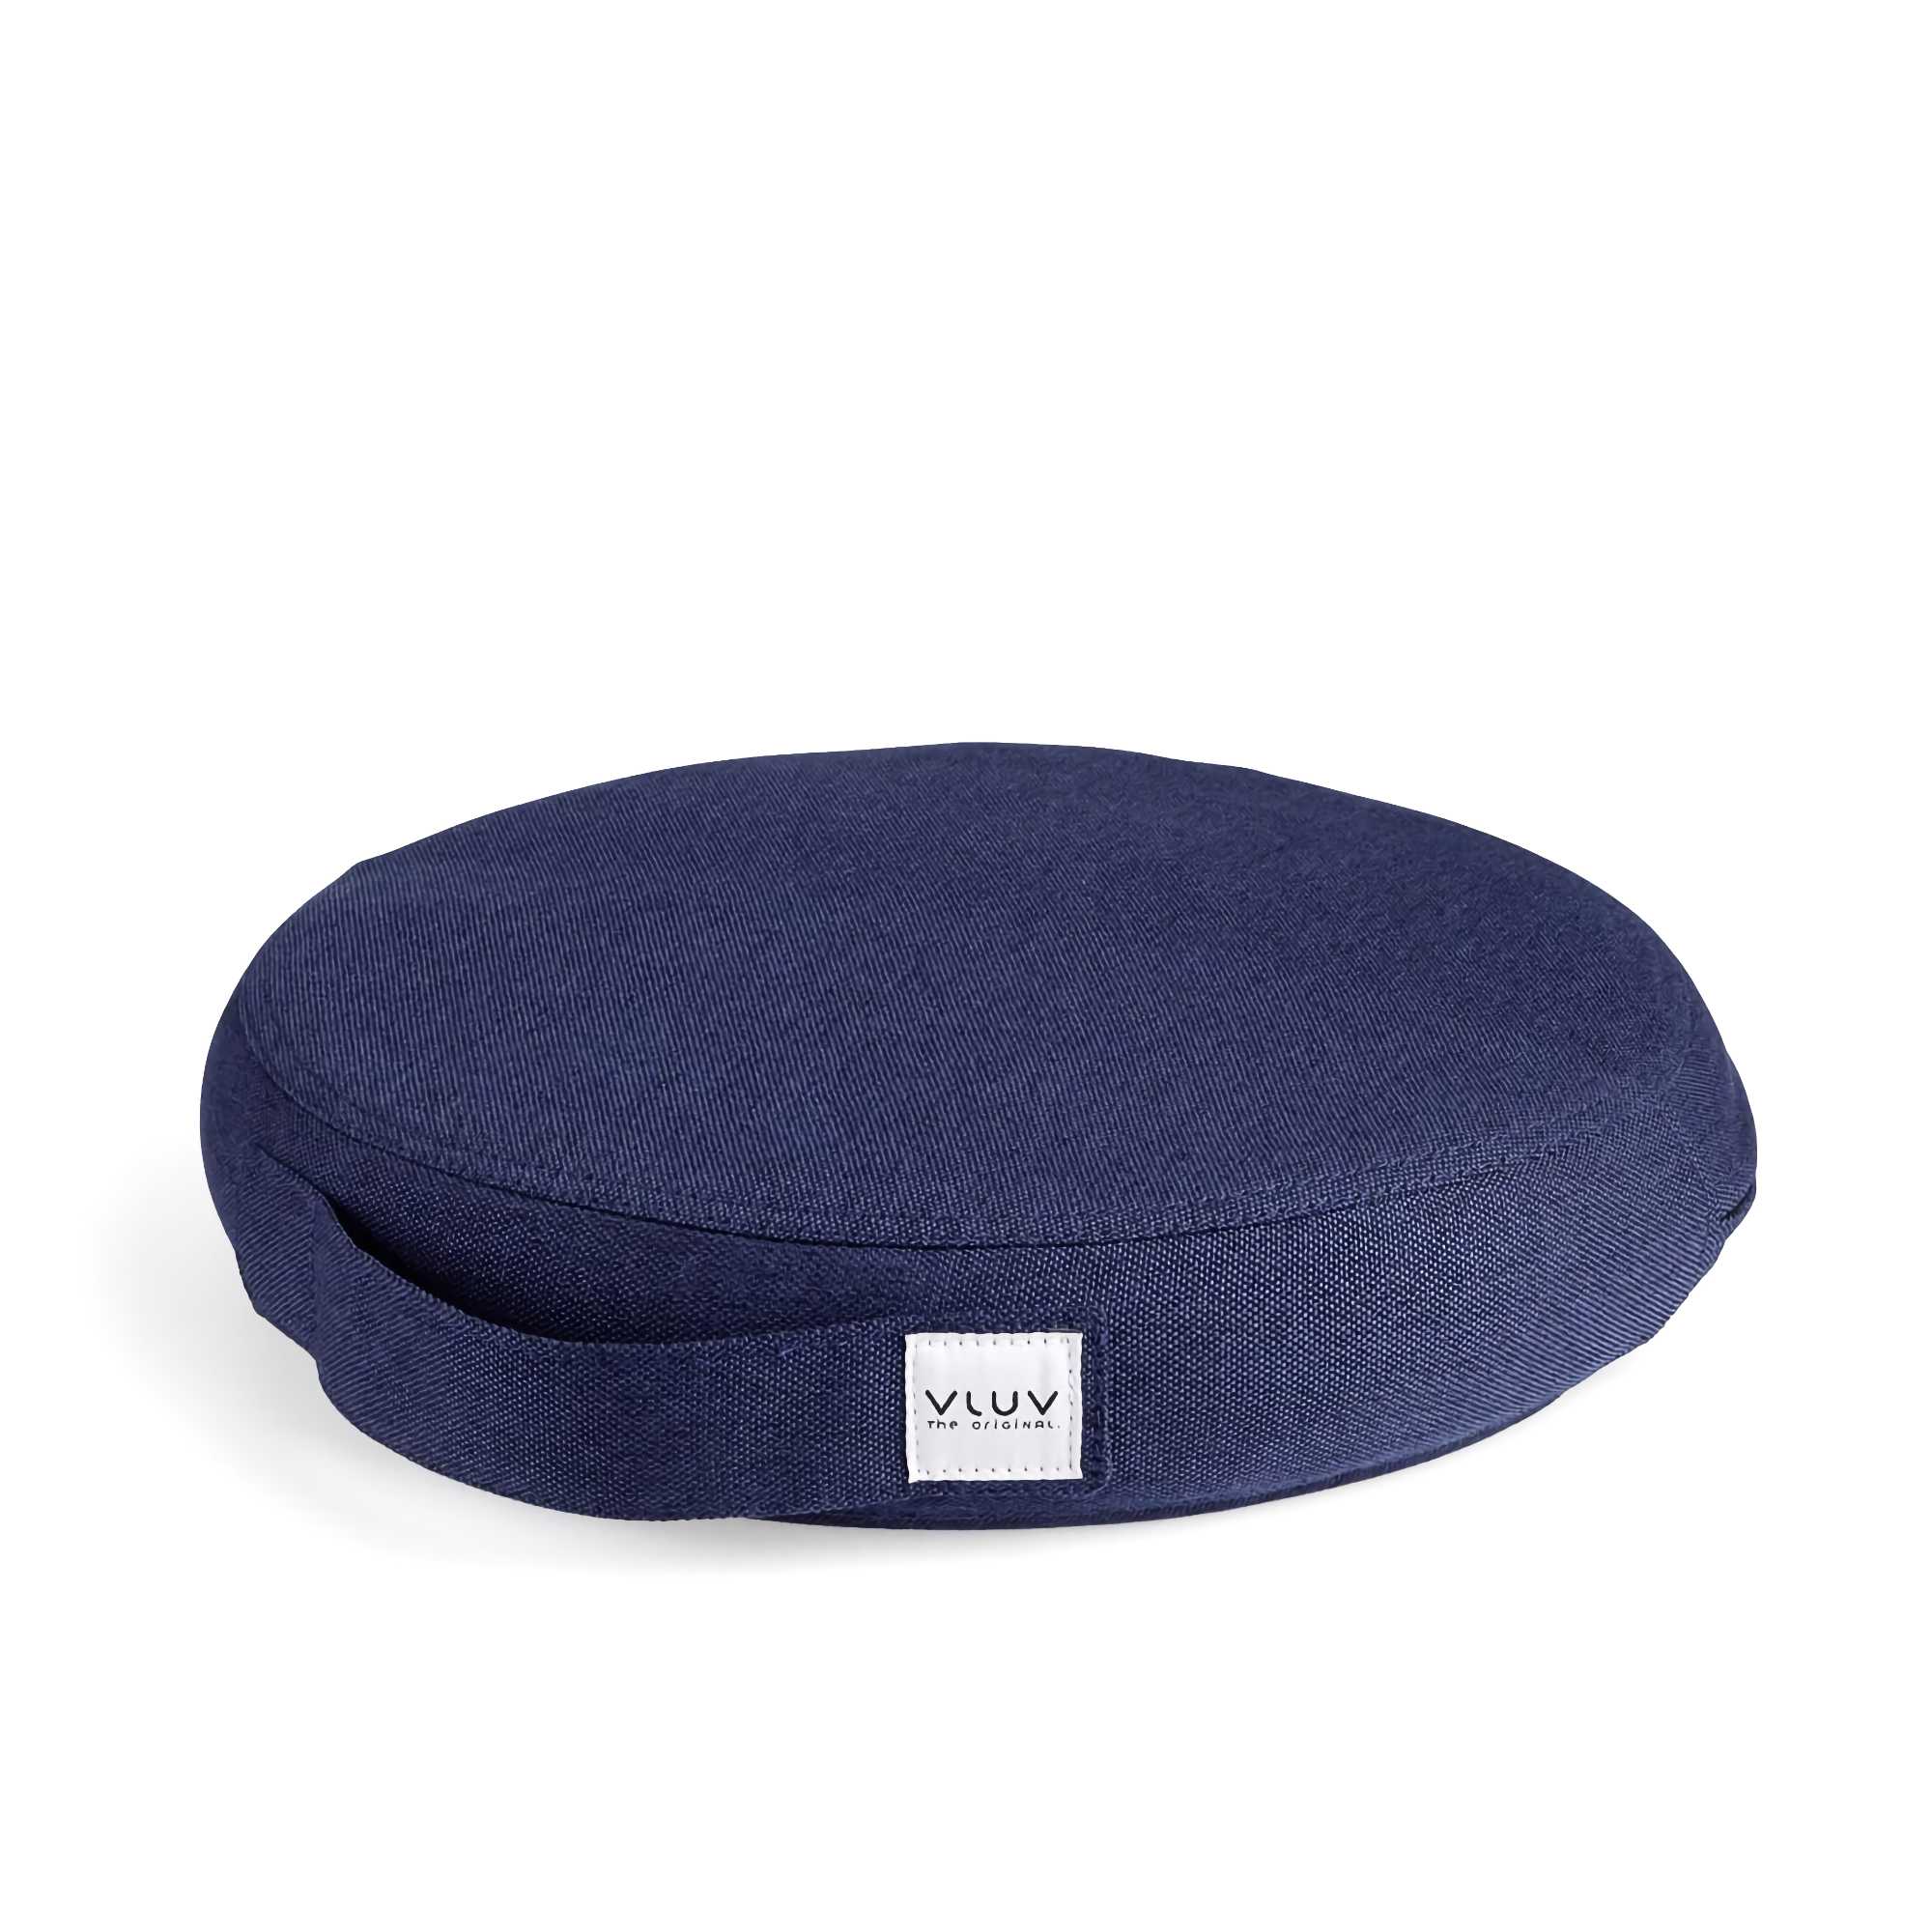 VLUV Pil & Ped balance cushion, royal blue